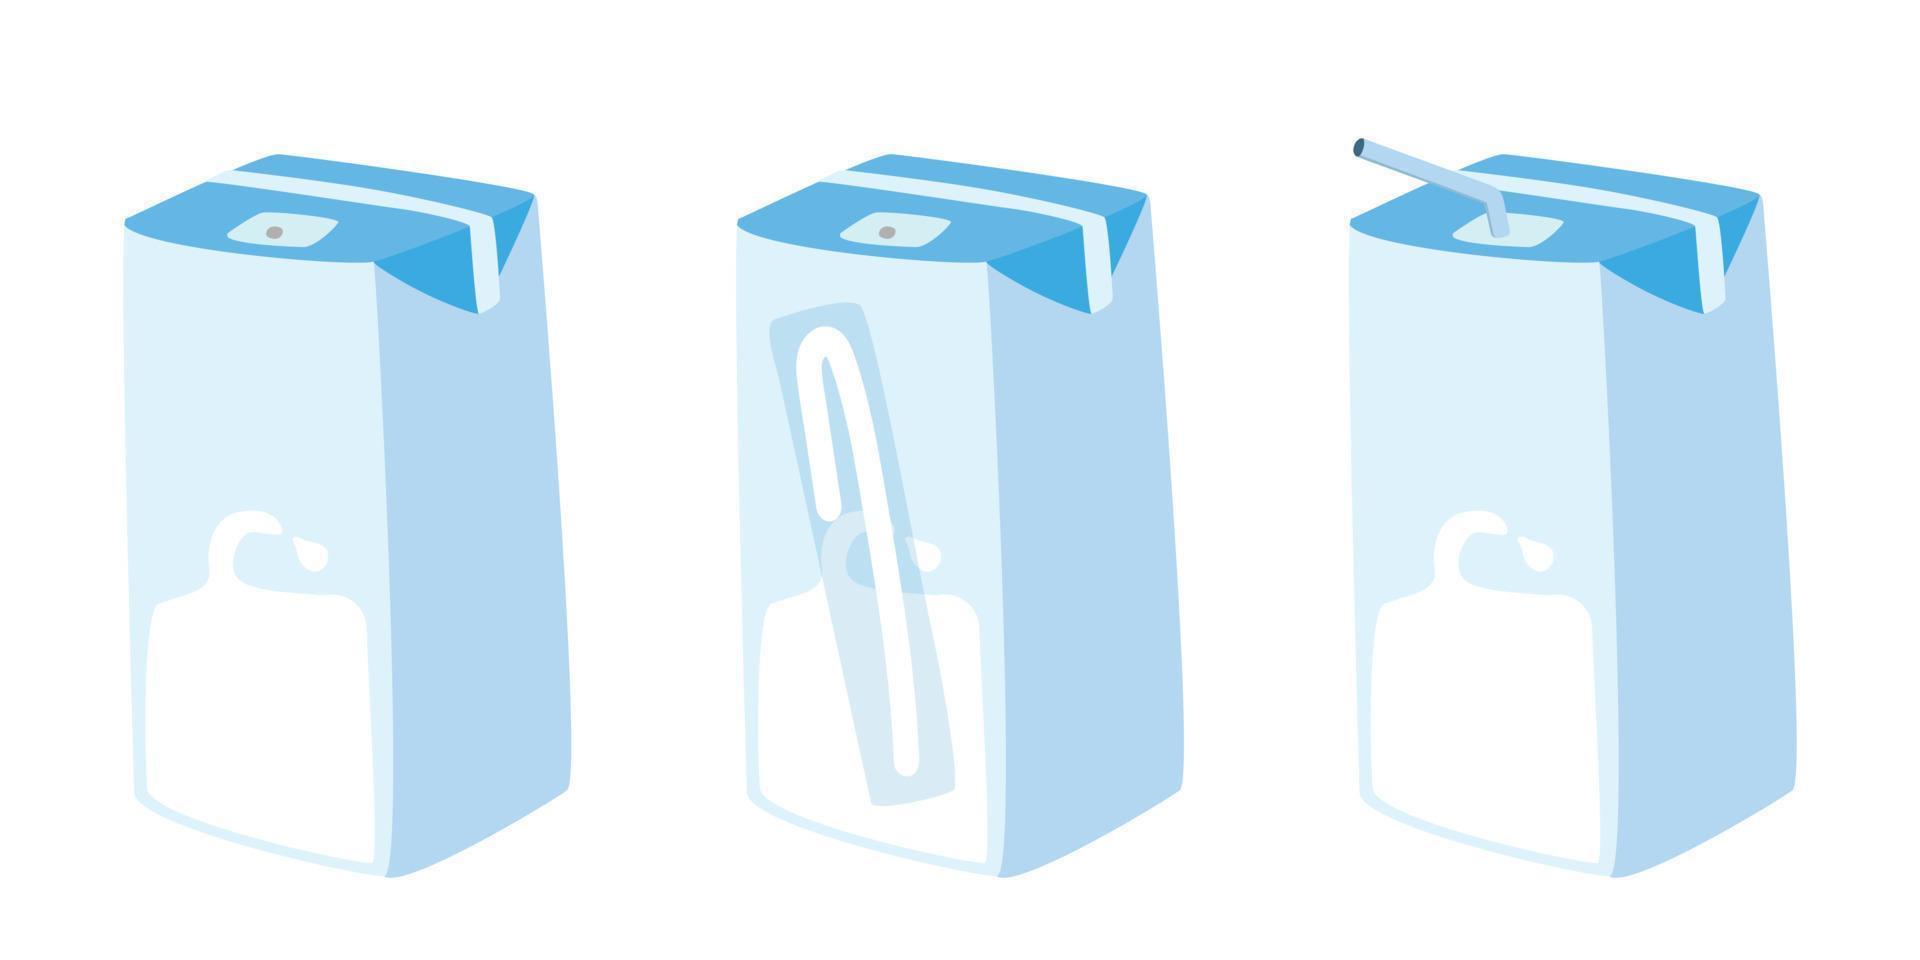 ensemble de lait dans la conception de vecteur de petite boîte en carton. boîte en carton de lait courte avec clipart de paille. boîte à lait dans différentes poses de dessin mignon de style dessin animé de paille. boîtes de lait doodle. notion de produits laitiers